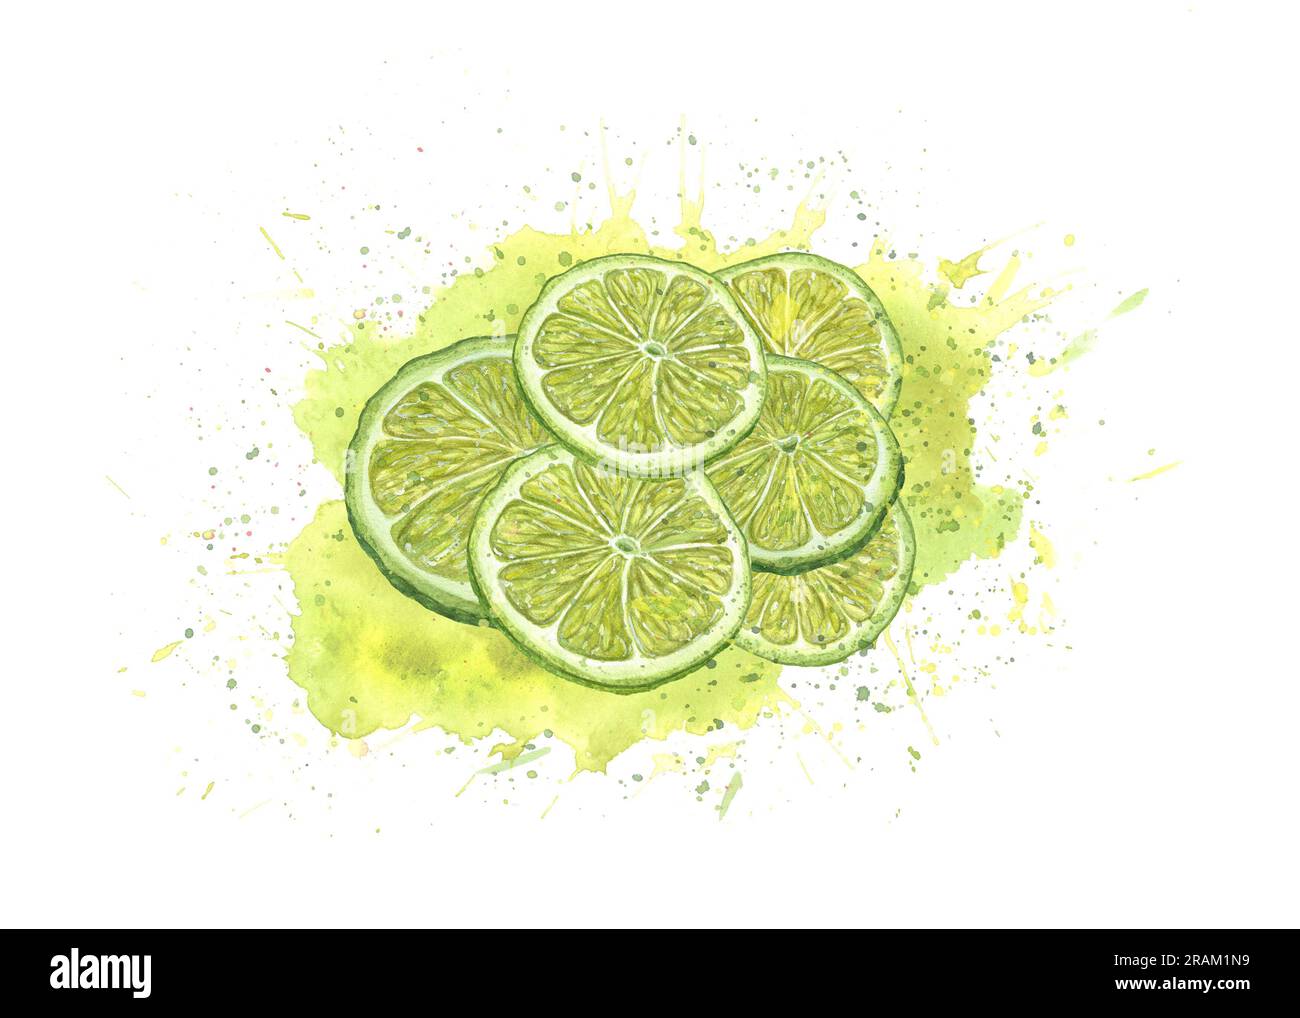 Aquarelle tranches de citron vert frais dans l'éclaboussure de jus isolé sur fond blanc. Spray juteux, agrumes mûrs. Illustration lumineuse pour un design créatif, cocktail Banque D'Images